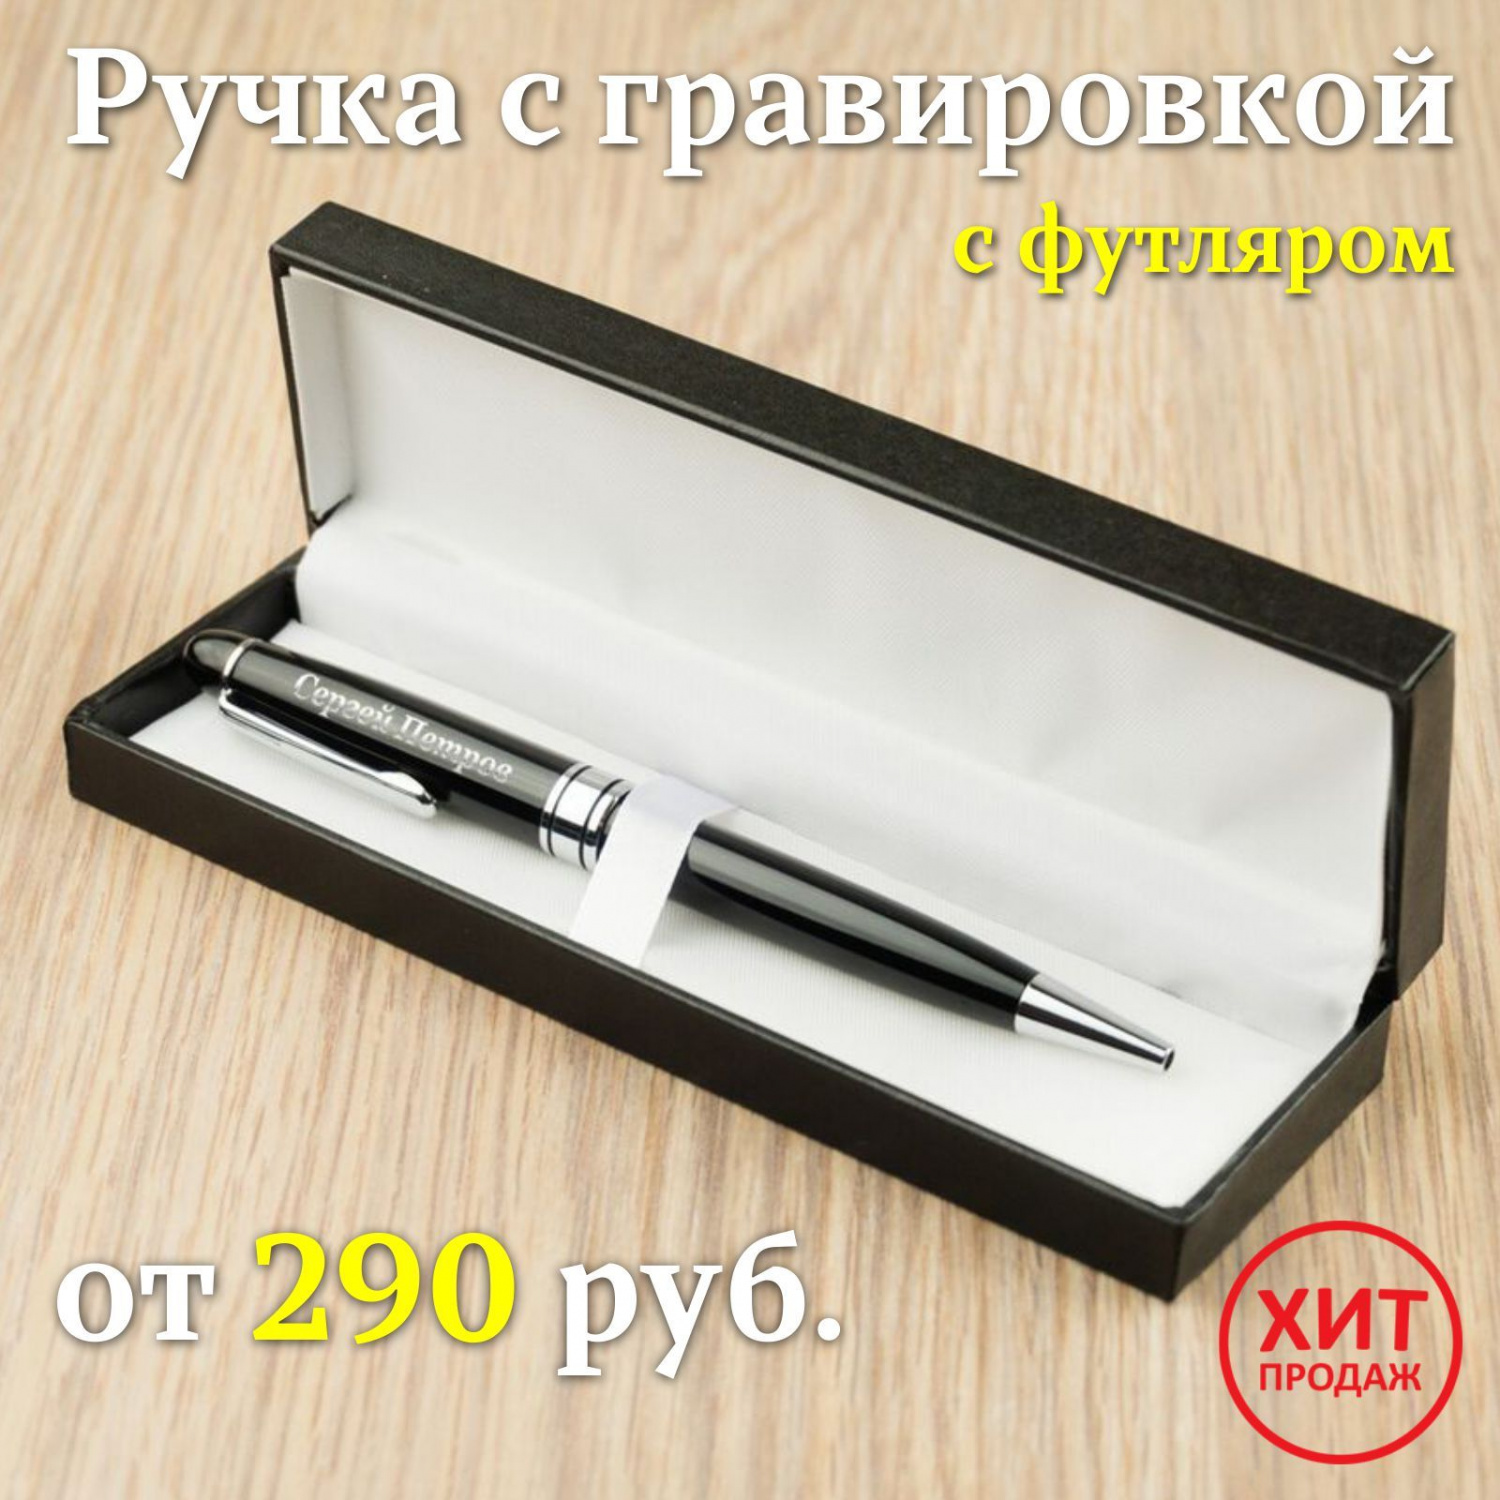 Ручка с гравировкой в футляре RED-2979